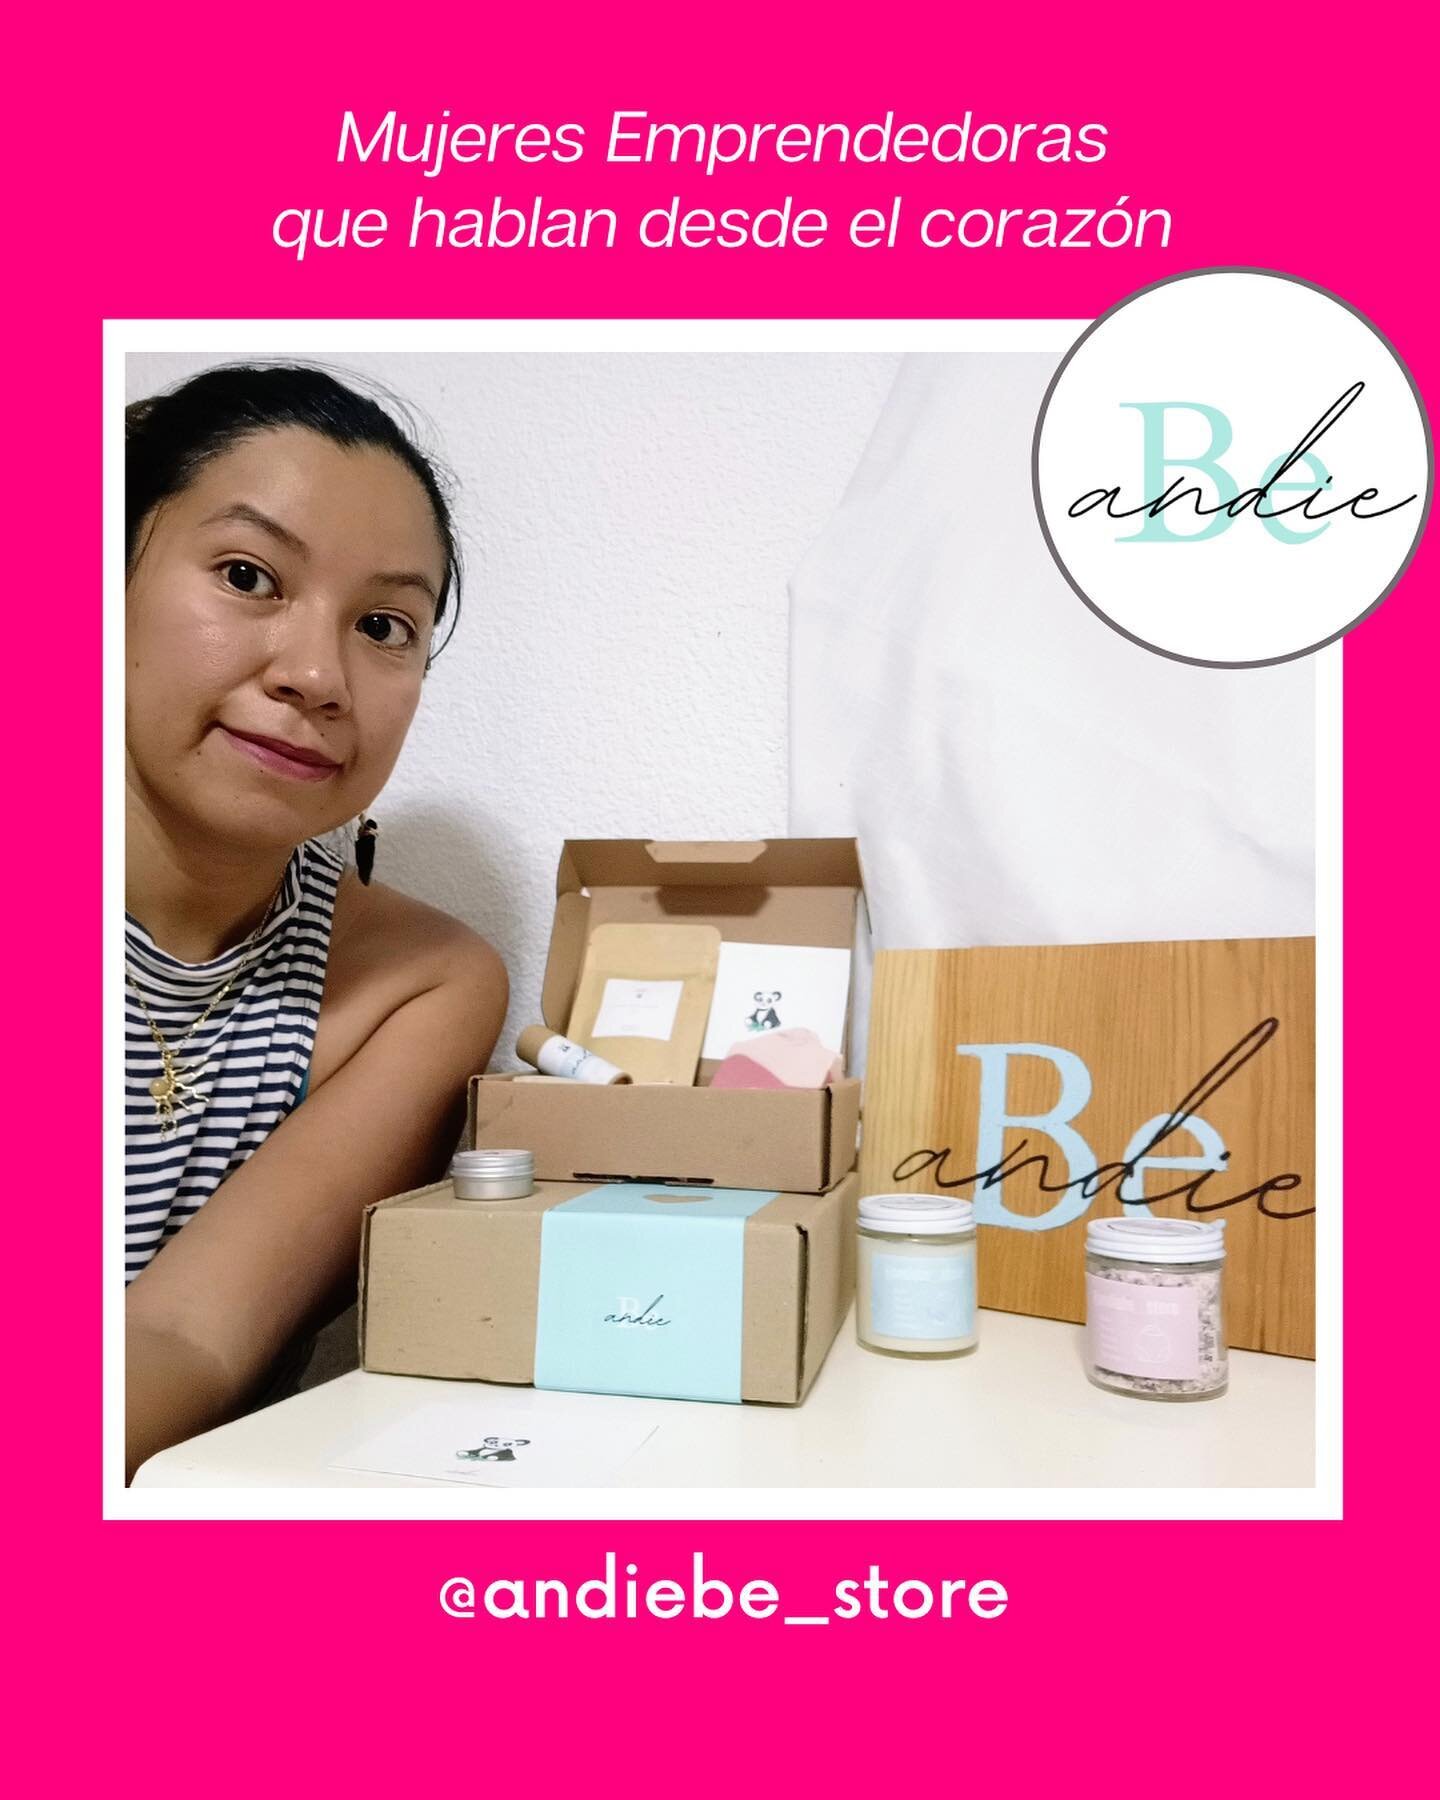 Andrea Barrios es fundadora de @andiebe_store le motiva crear f&oacute;rmulas de cuidado personal saludables, ecol&oacute;gicas y de mucha calidad, que hagan que muchas mujeres aprendan a respetar y honrar su cuerpo.

Participante del Rose Grant Edic